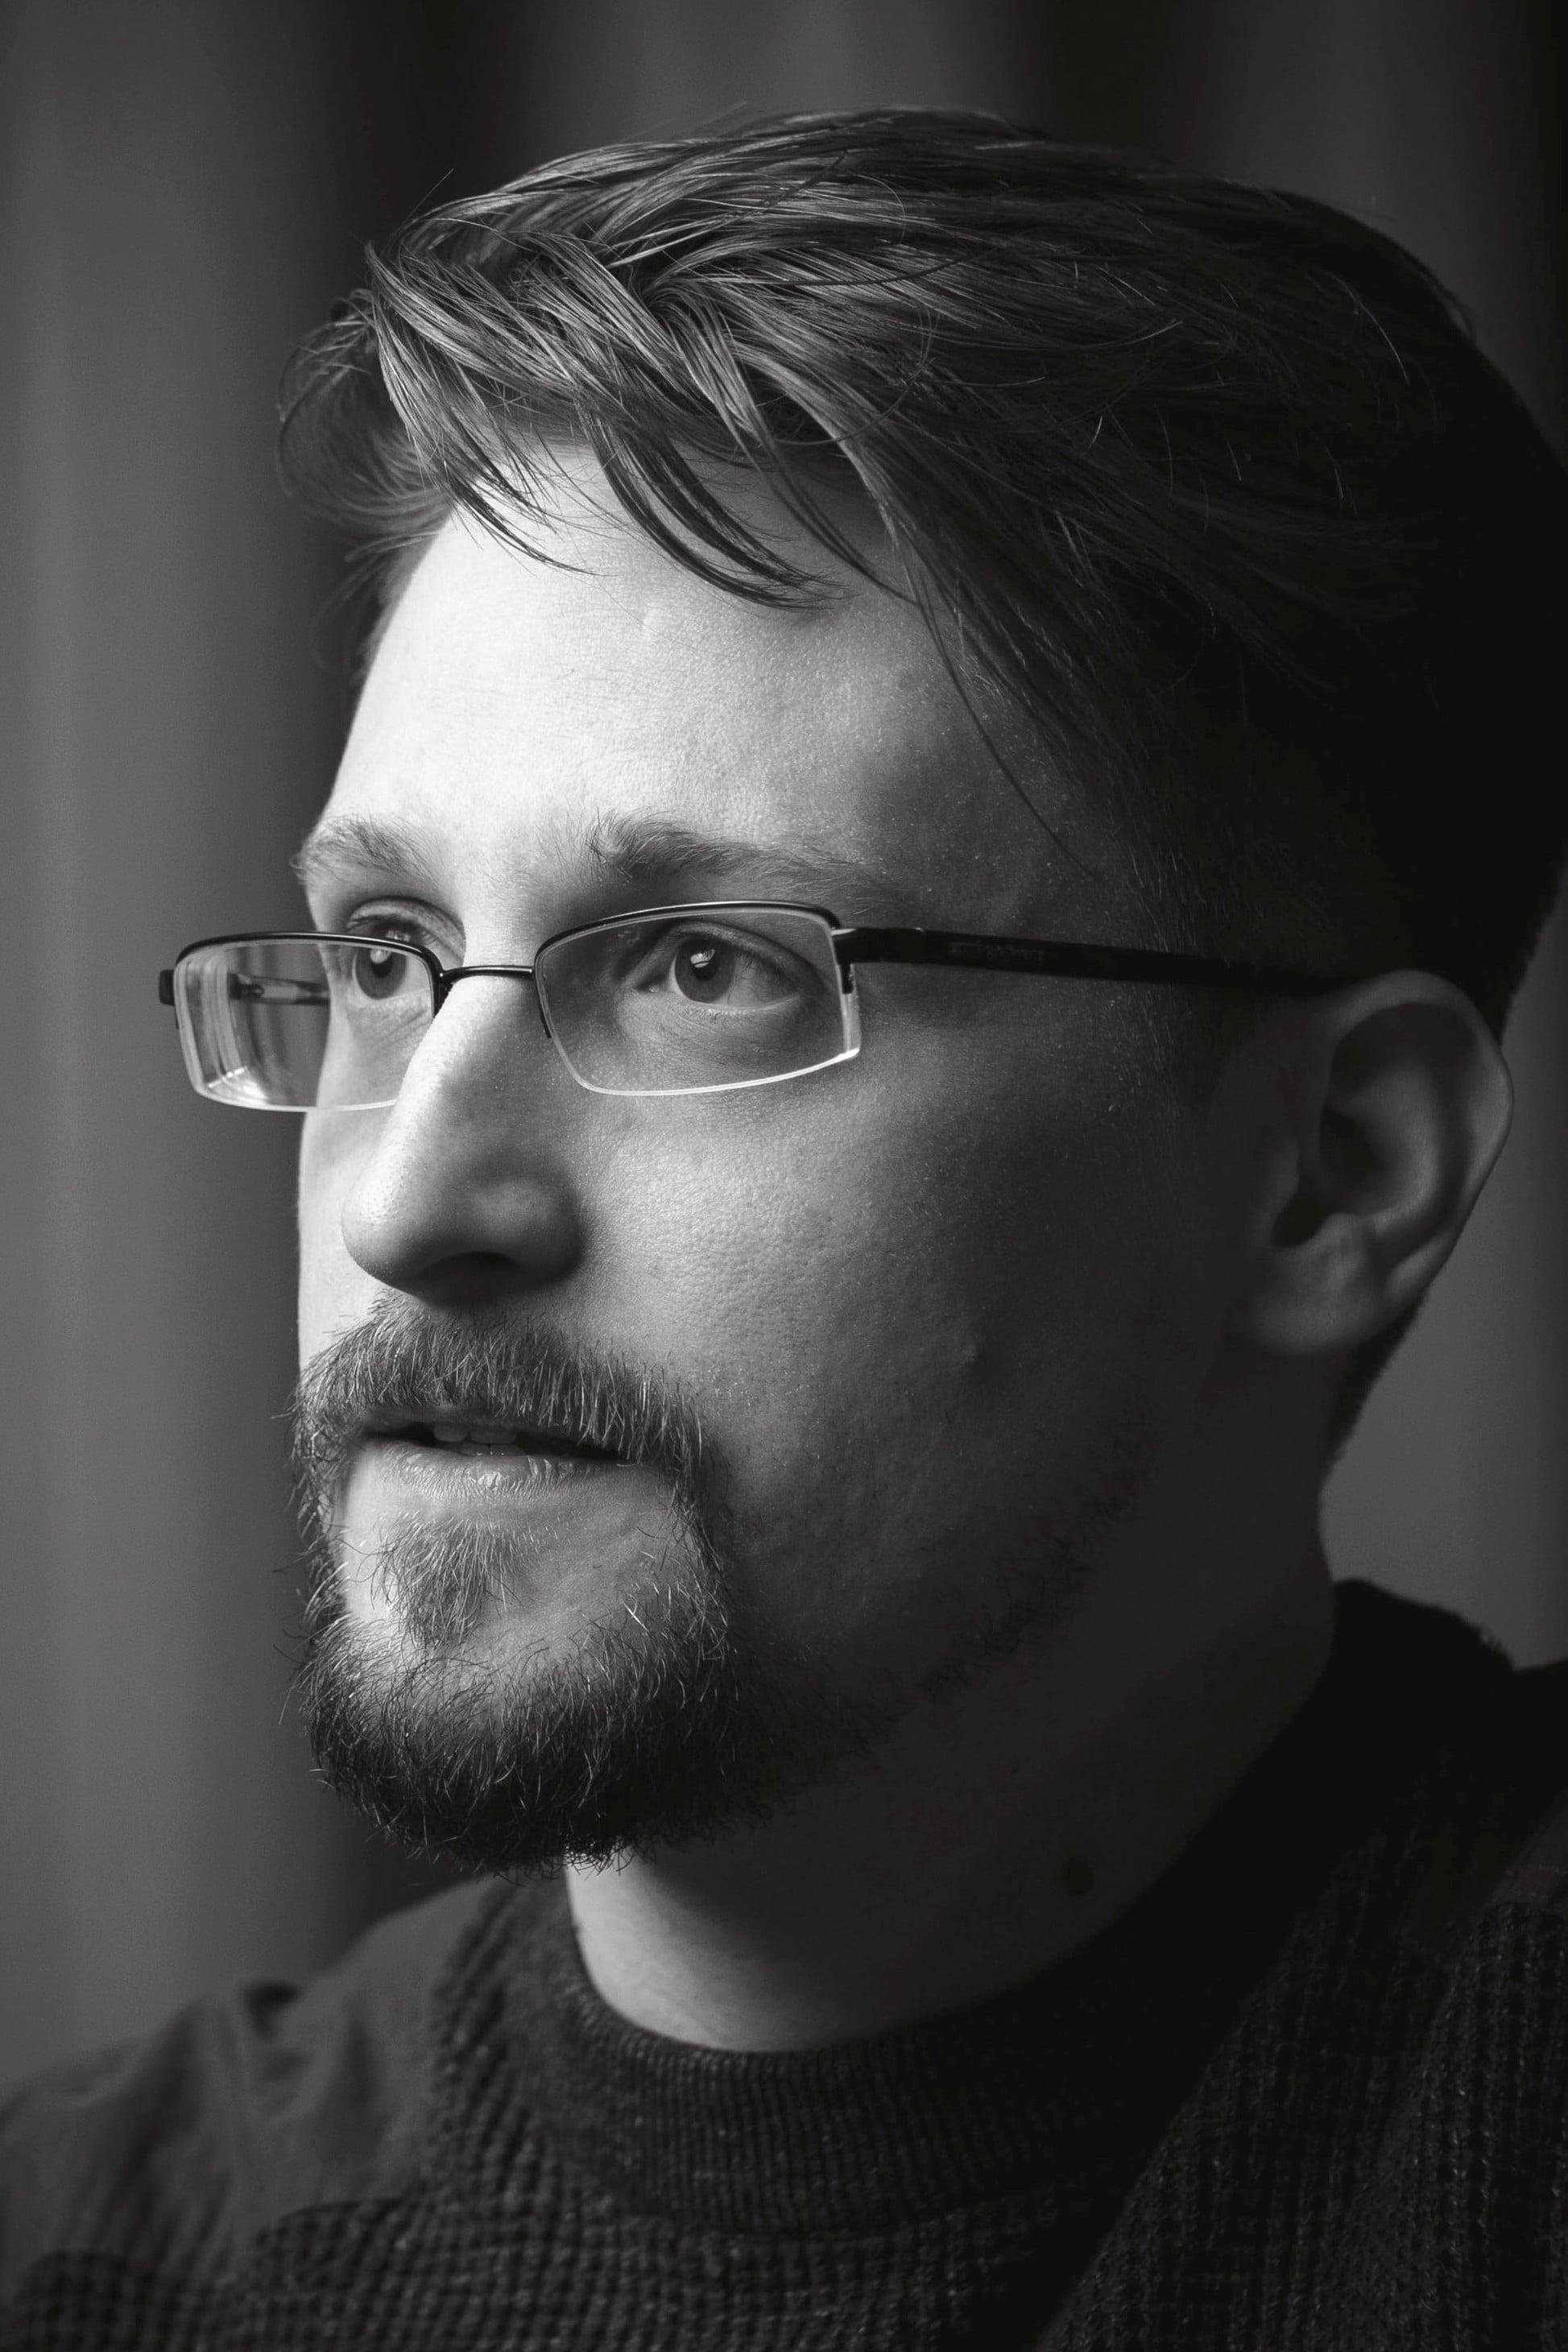 Edward Snowden poster